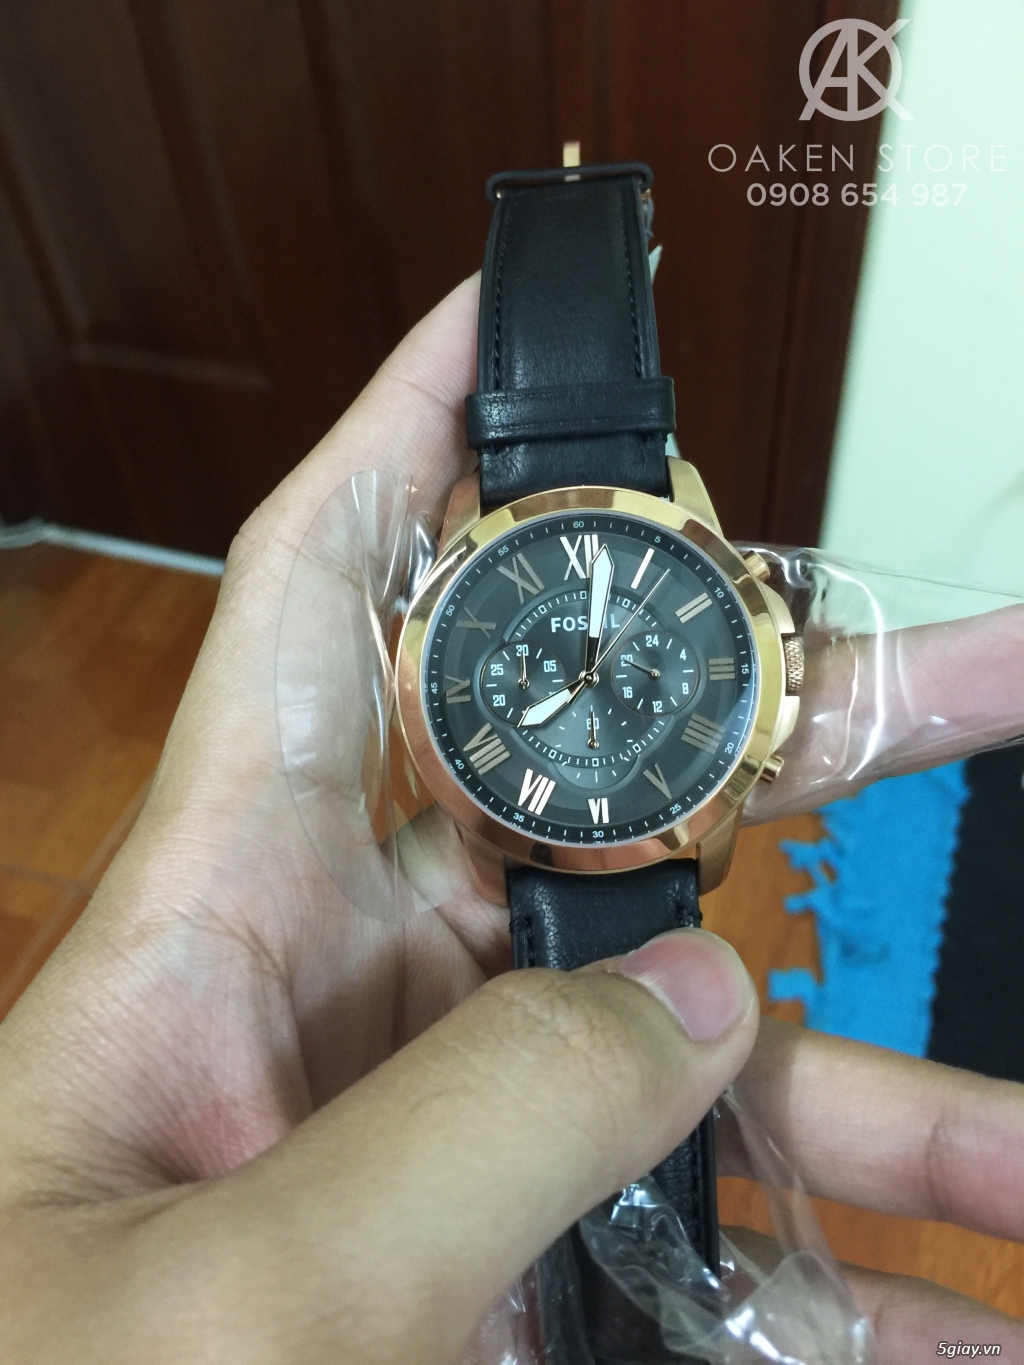 Oaken Store - Đồng hồ chính hãng xách tay giá tốt - 9